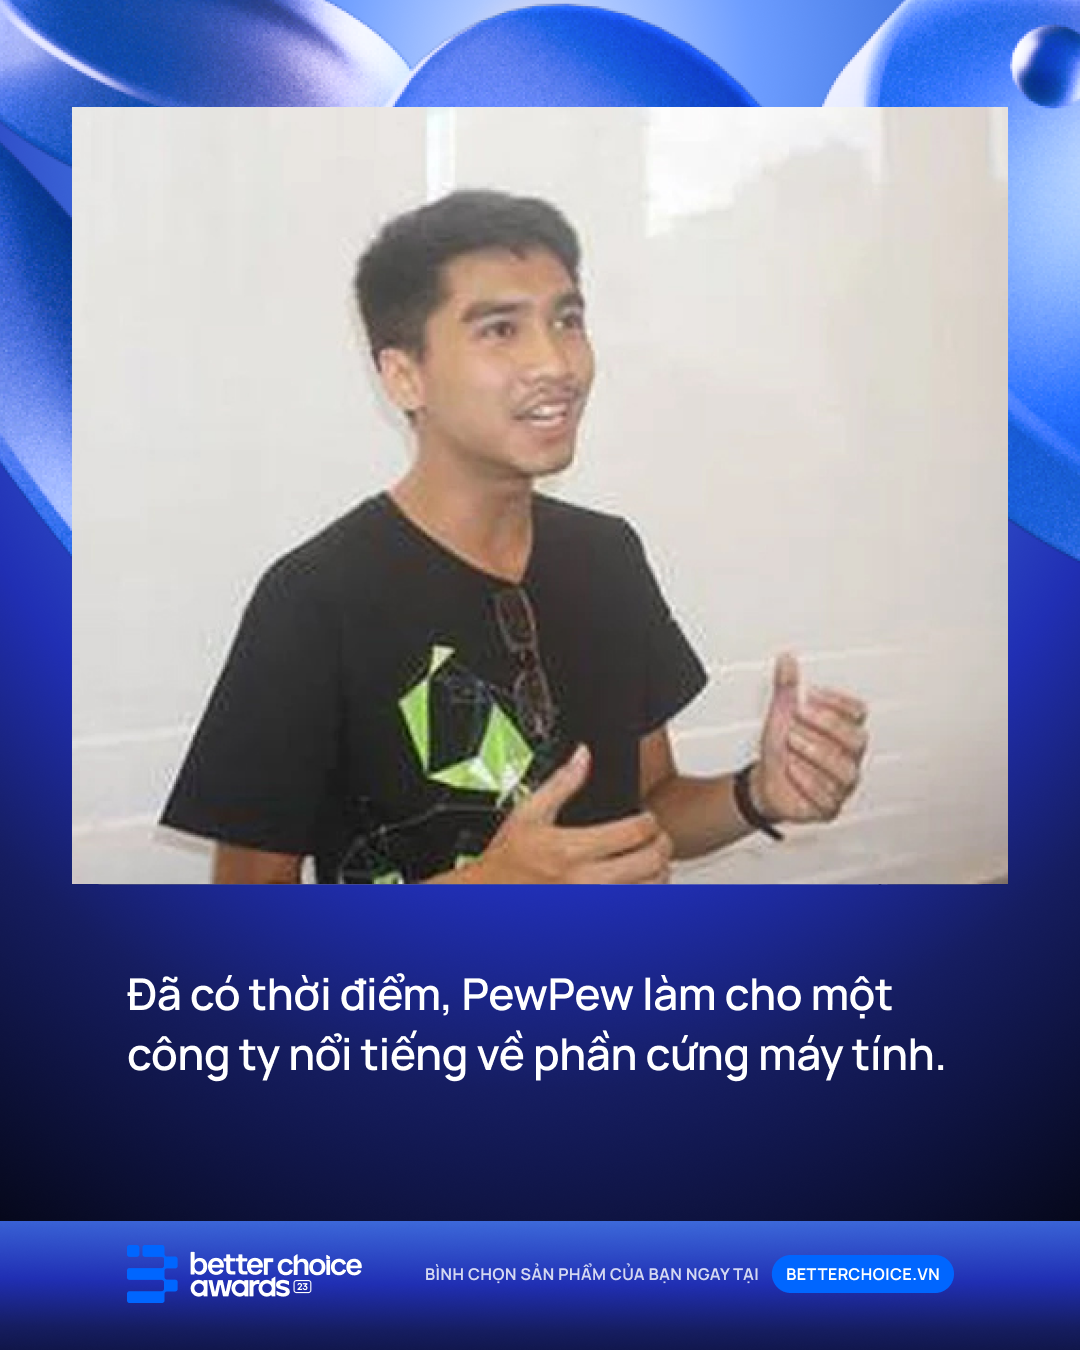 PewPew chính thức thông báo rút khỏi làng giải trí, fan tiếc ngẩn ngơ hình  ảnh chàng streamer thân quen ngày nào | ONE Esports Vietnam